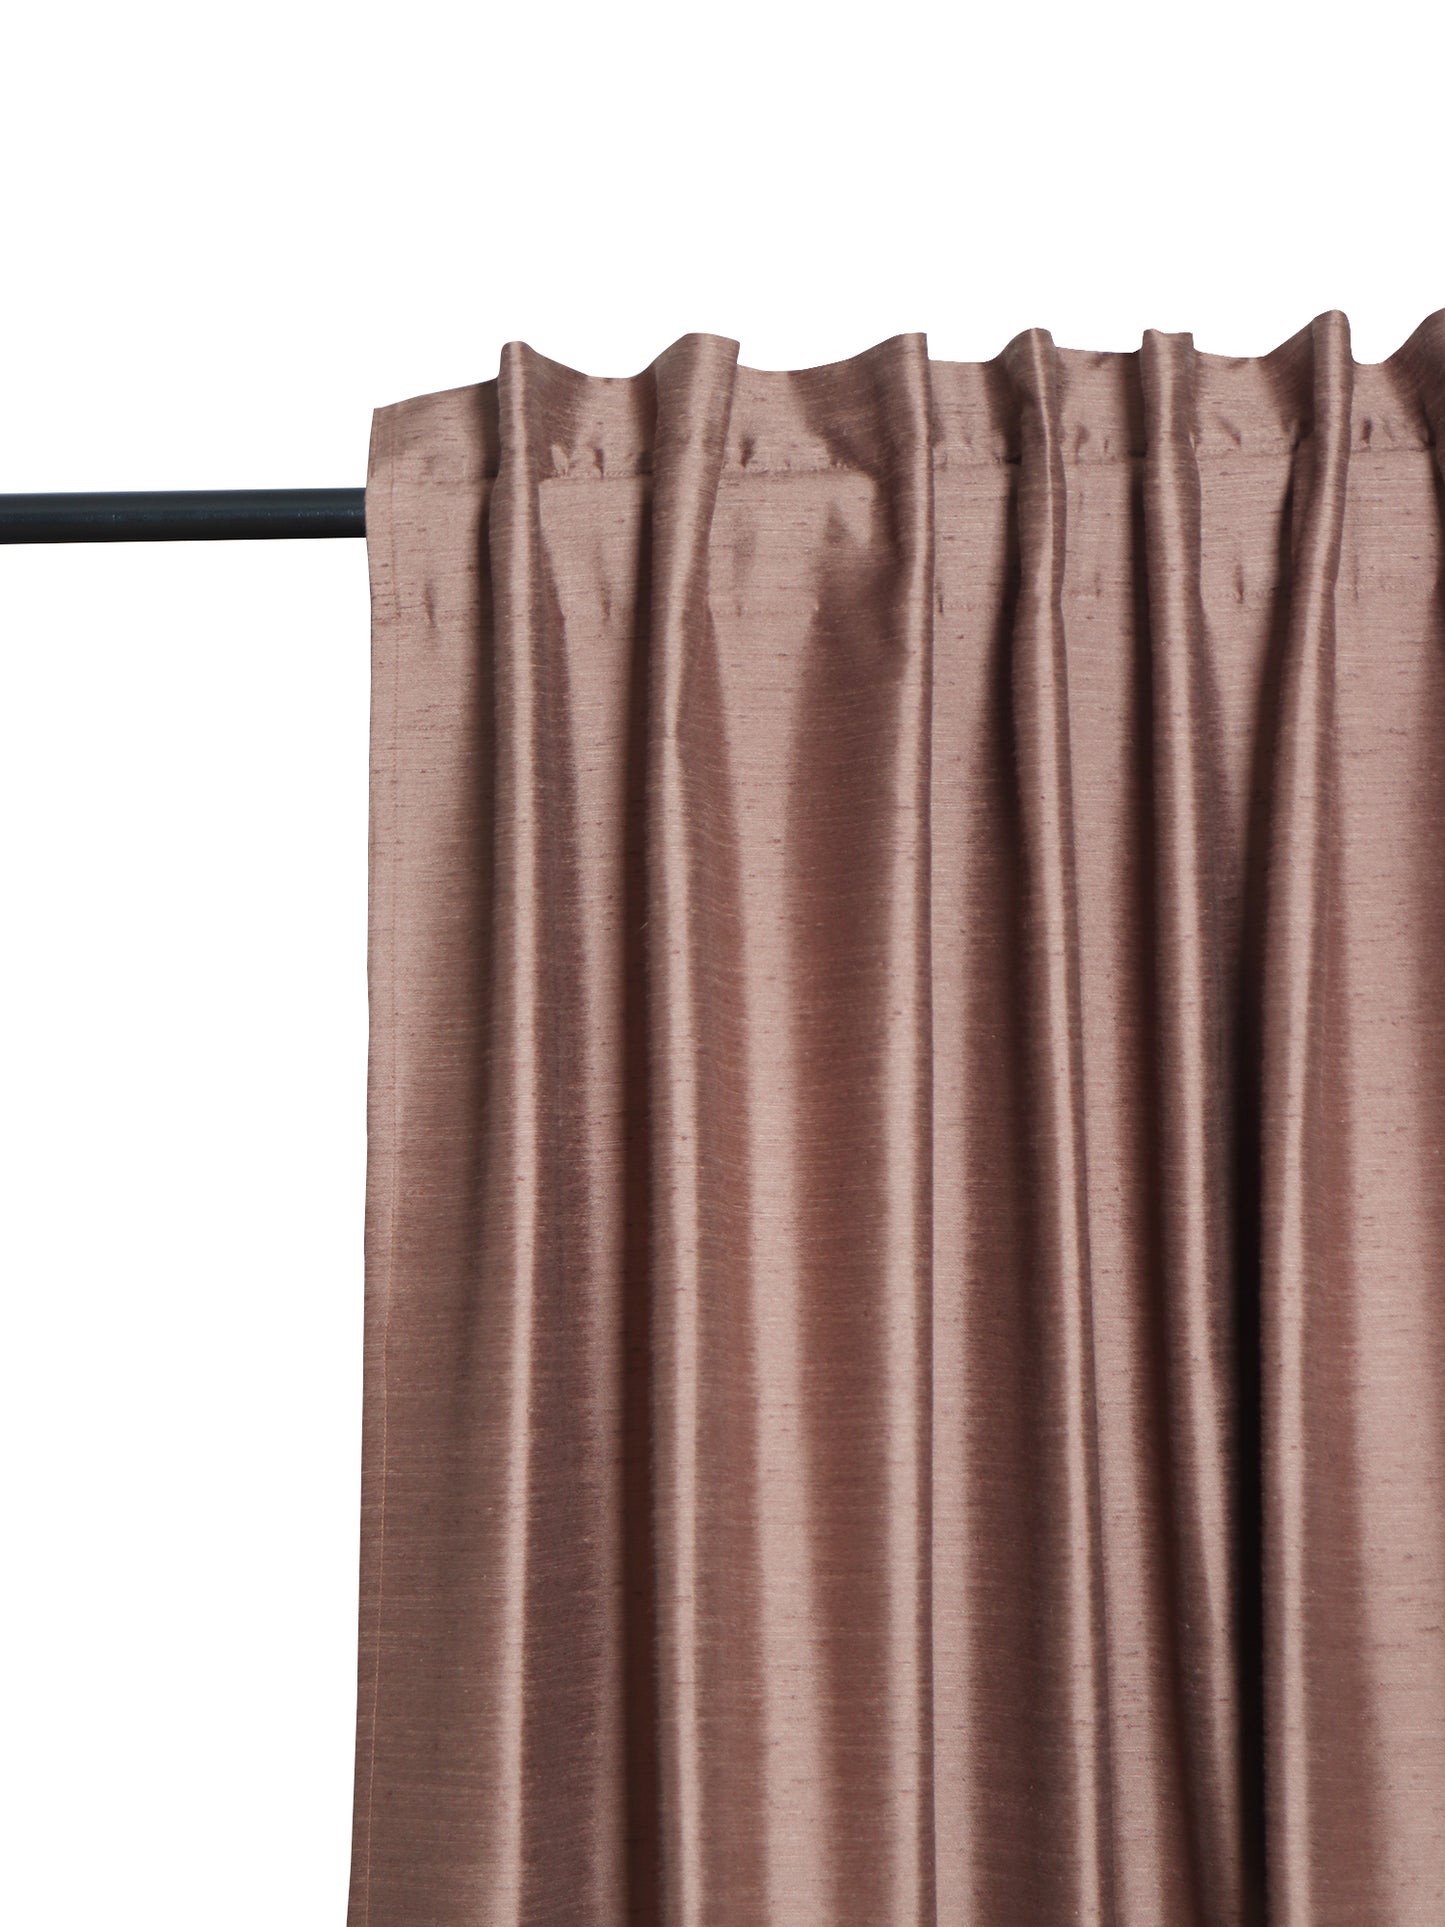 Door Curtain Cotton Blend Solid Brown - 52" X 84" (Hidden Loop) (7ft)